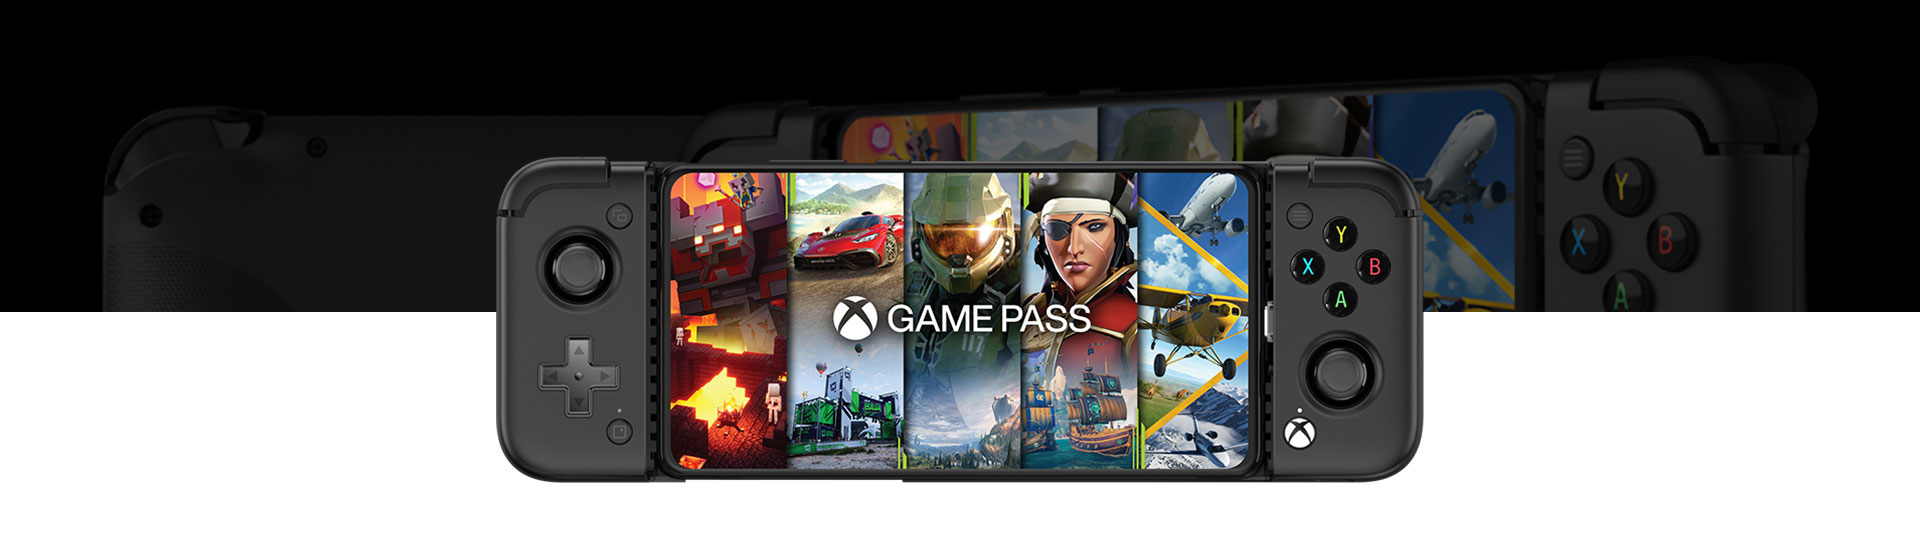 A GameSir X2 Pro mobil játékkontroller elölnézete a Game Pass képernyőjével